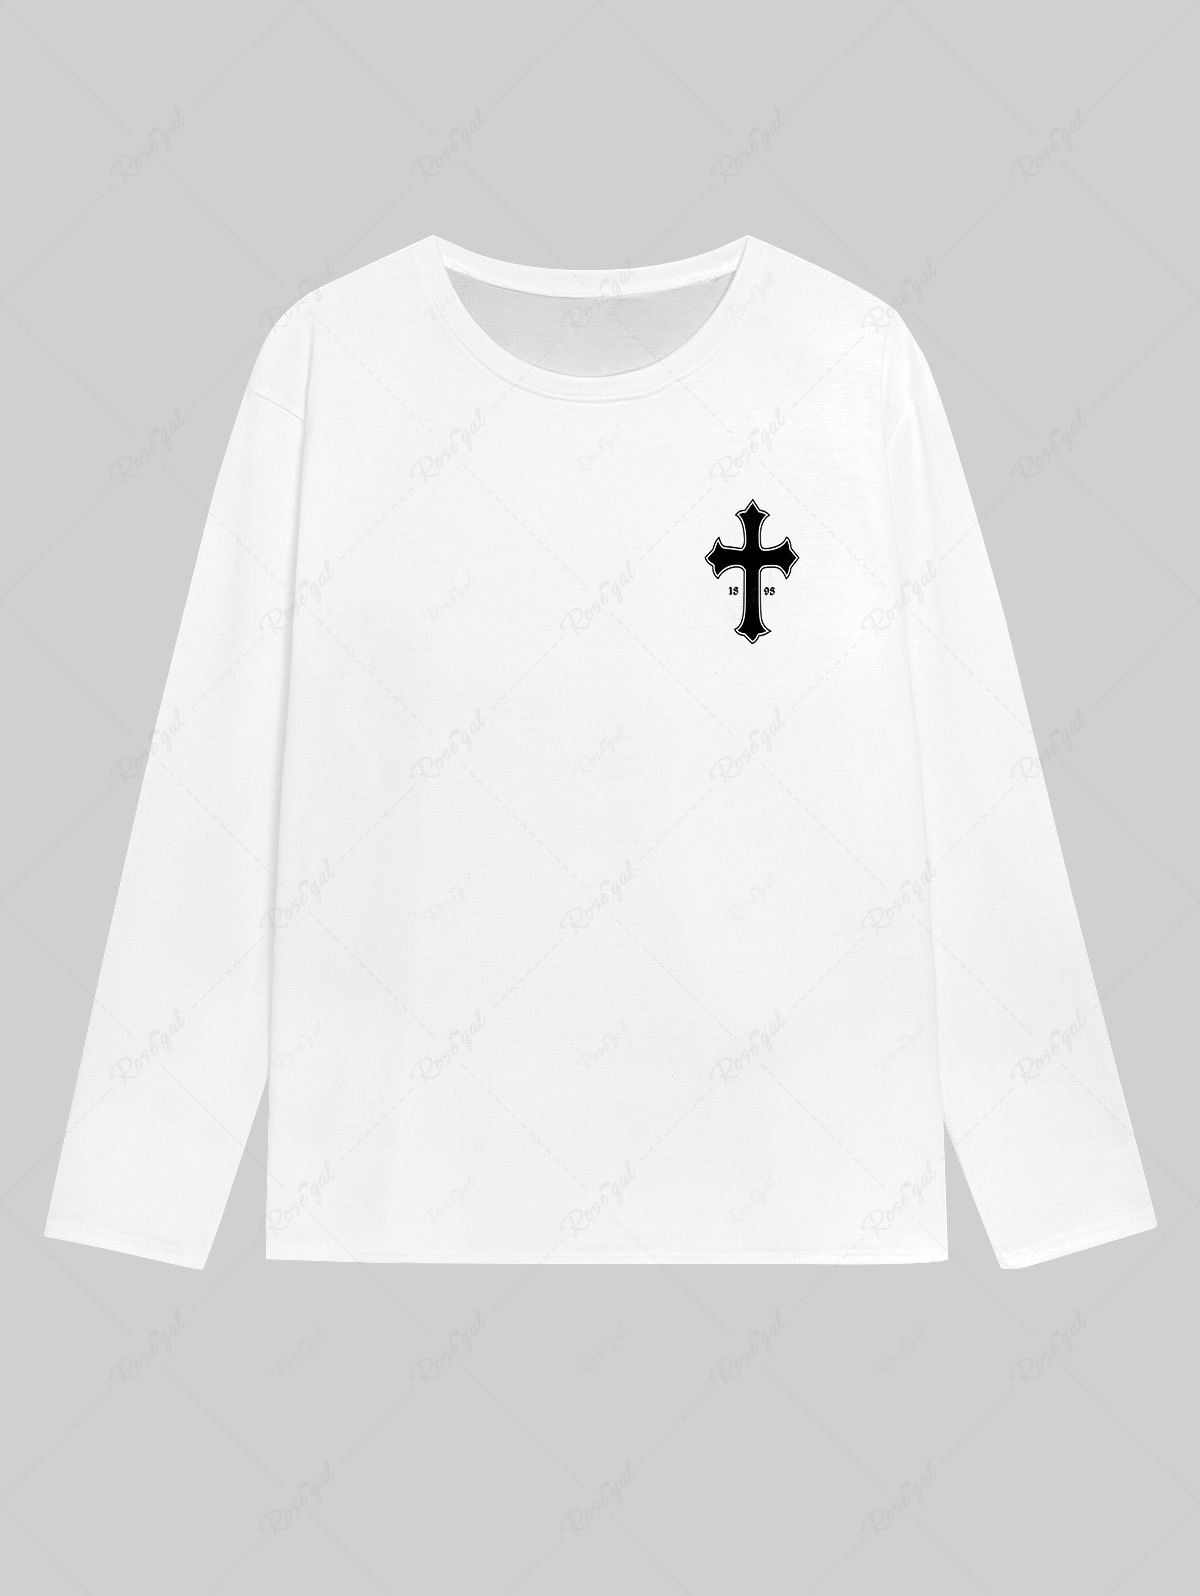 Unique Gothic Cross Letters Print T-shirt For Men  